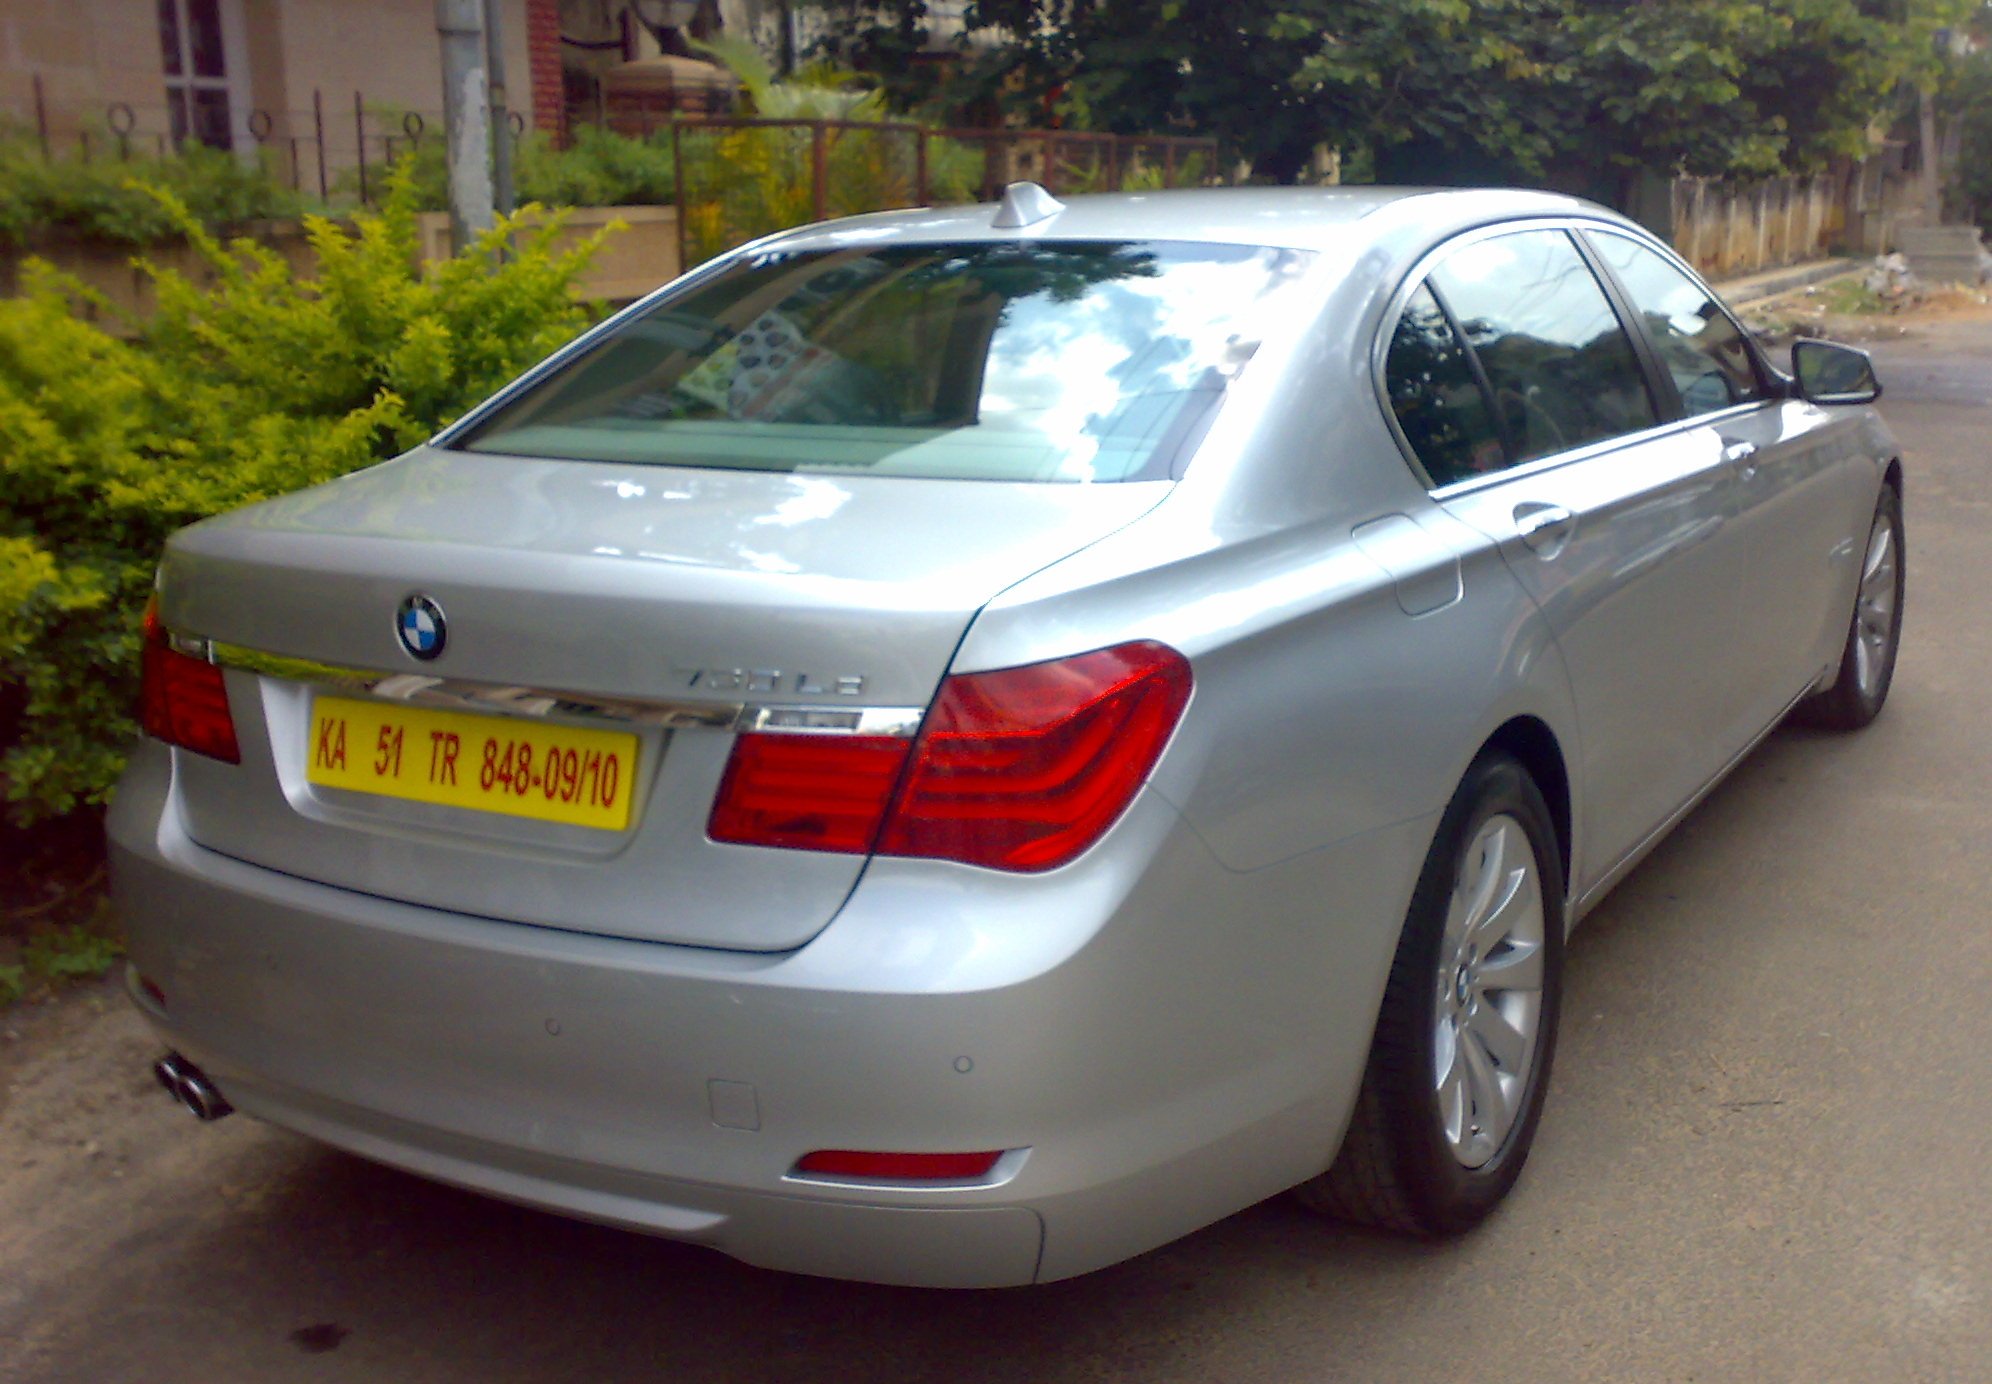 BMW 7 series car rental in bangalore || 0901994445